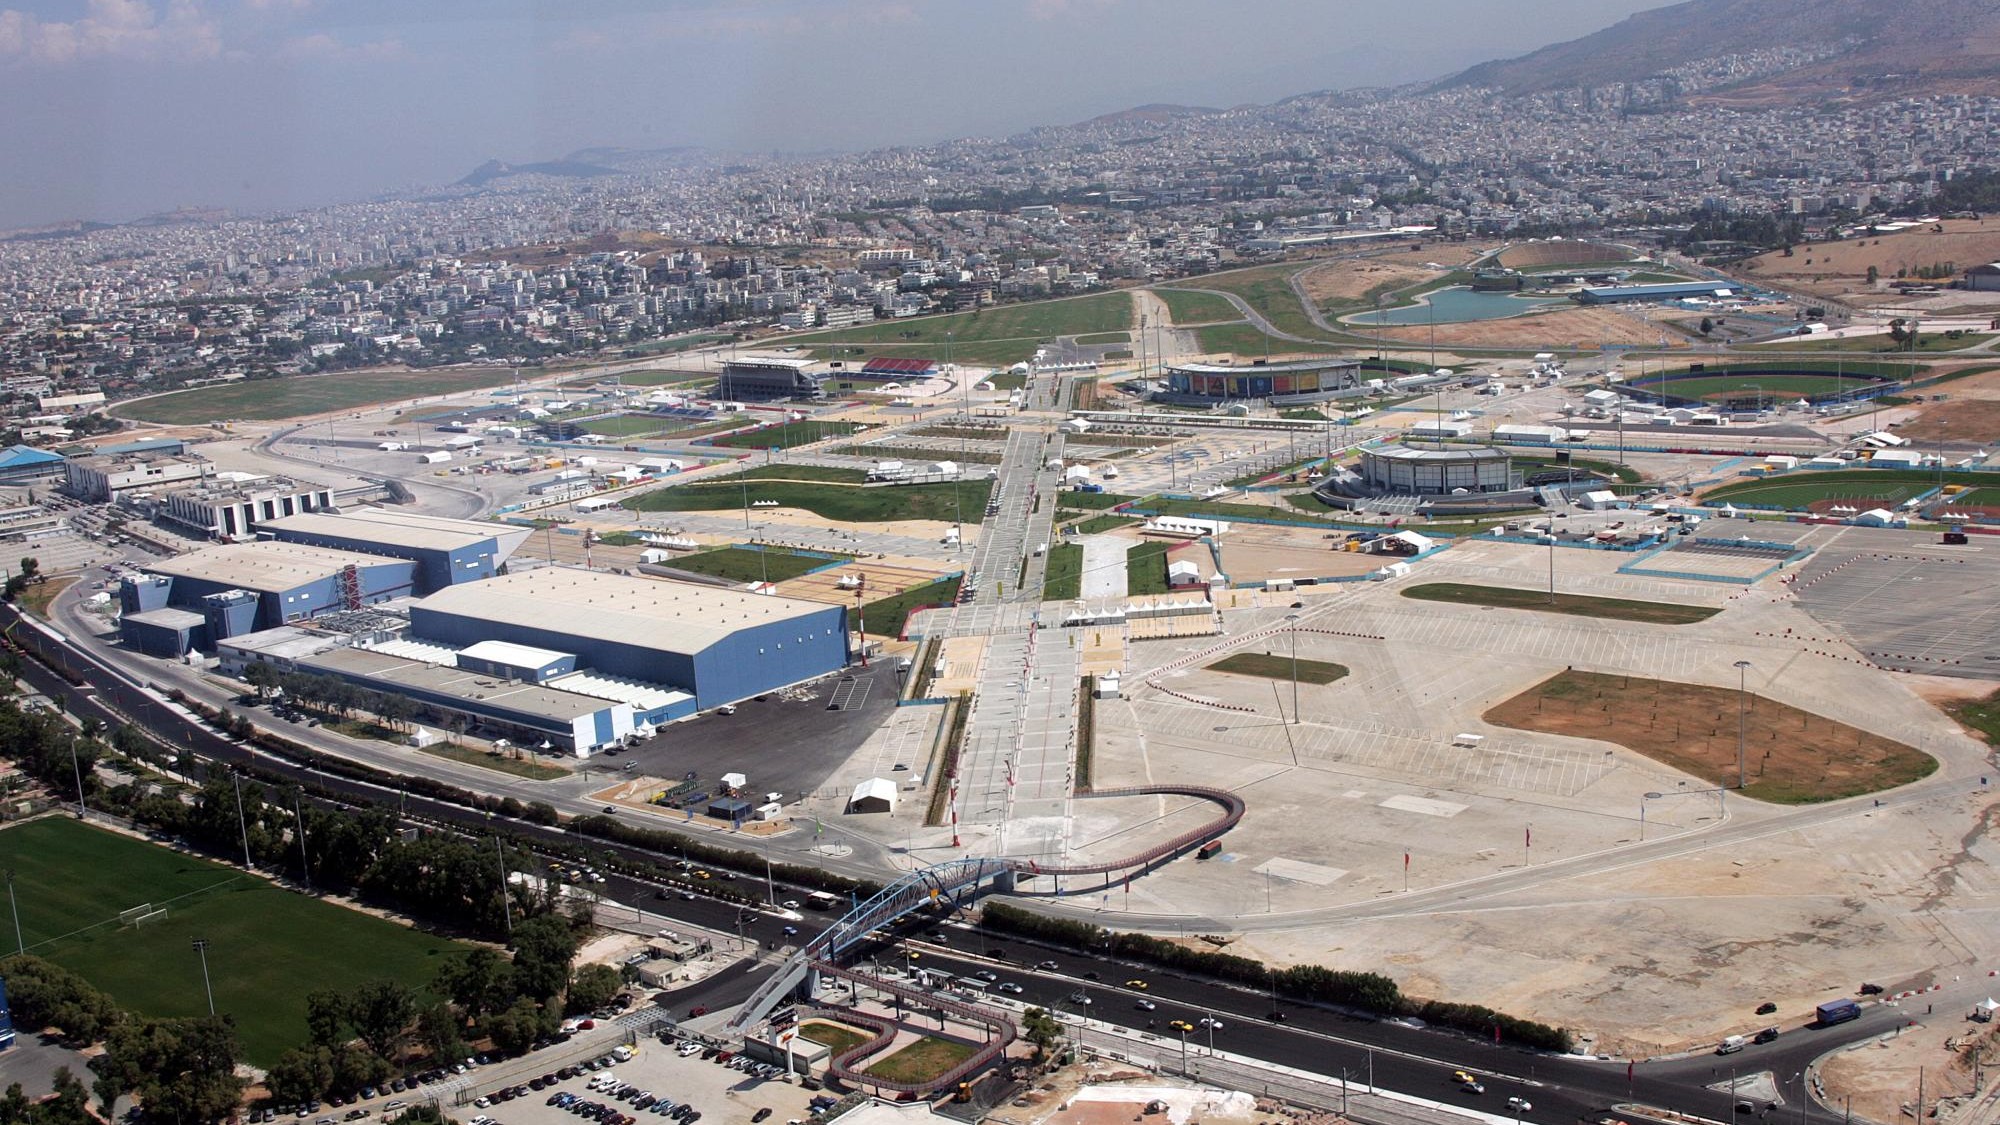 Nach Bombendrohung - Flugzeug nach Bombendrohung sicher in Griechenland gelandet